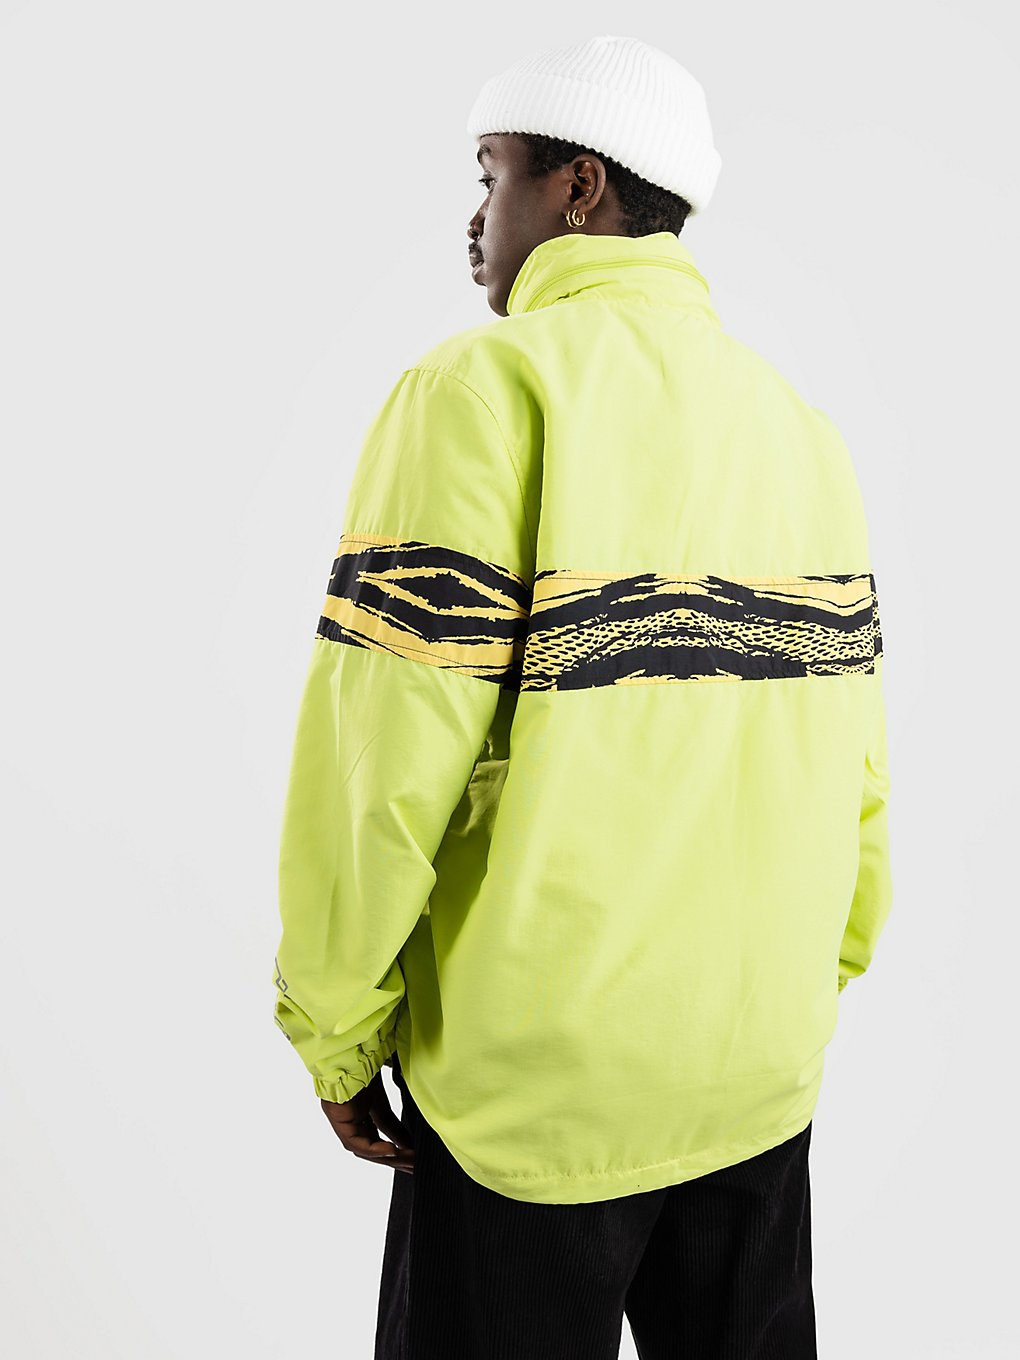 Paterson Ascent Trek Jacket bright yellow kaufen